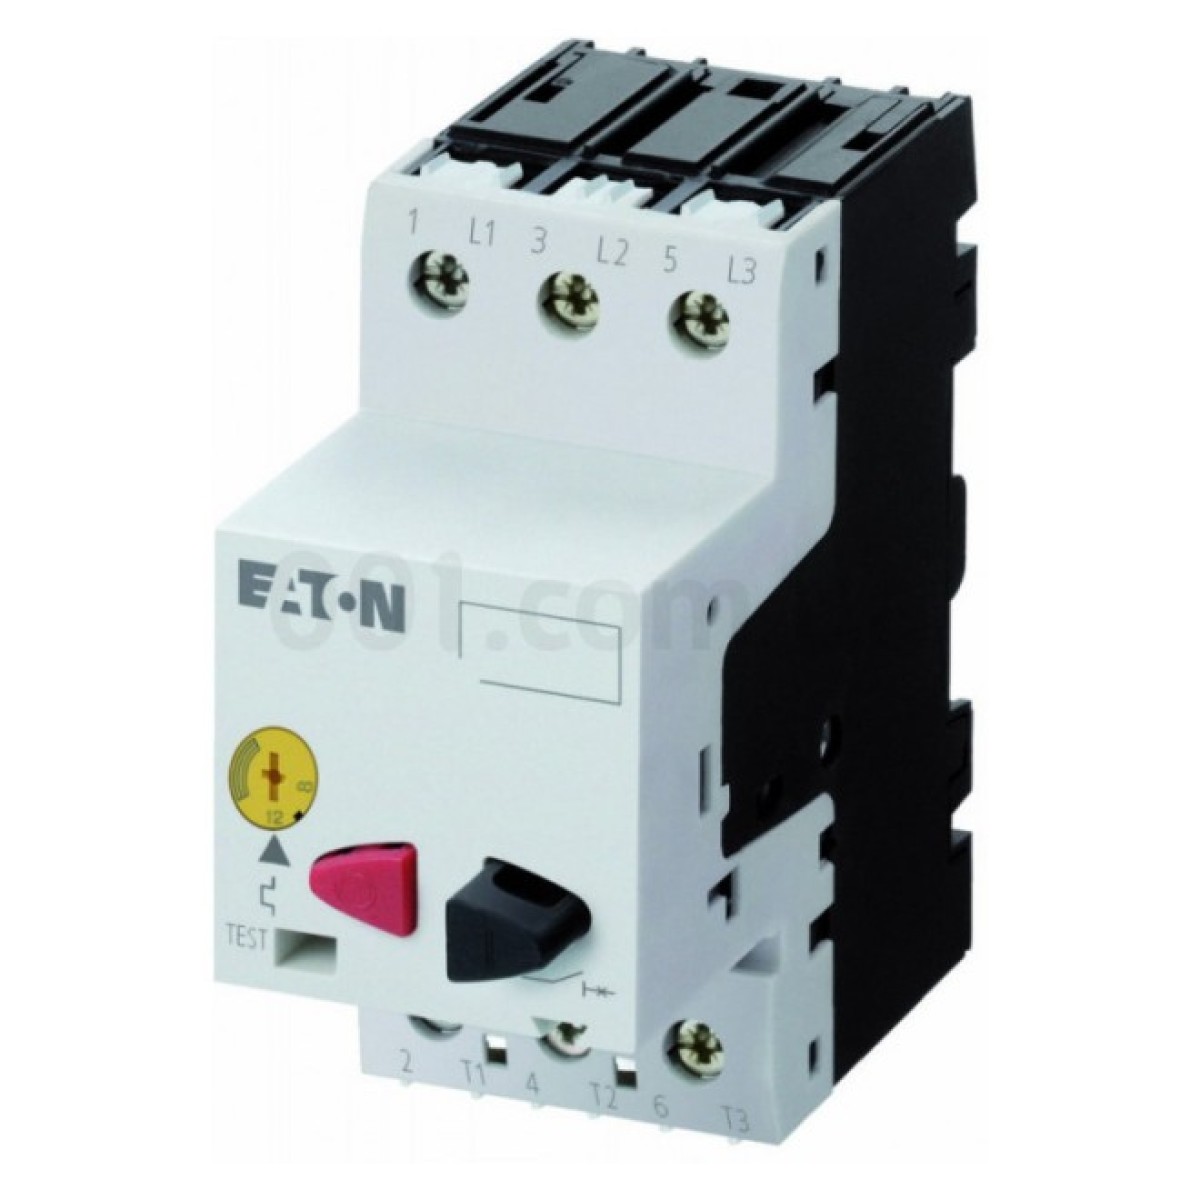 Автоматический выключатель защиты двигателя PKZM01-1,6 Ir=1...1,6А, Eaton (Moeller) 98_98.jpg - фото 1